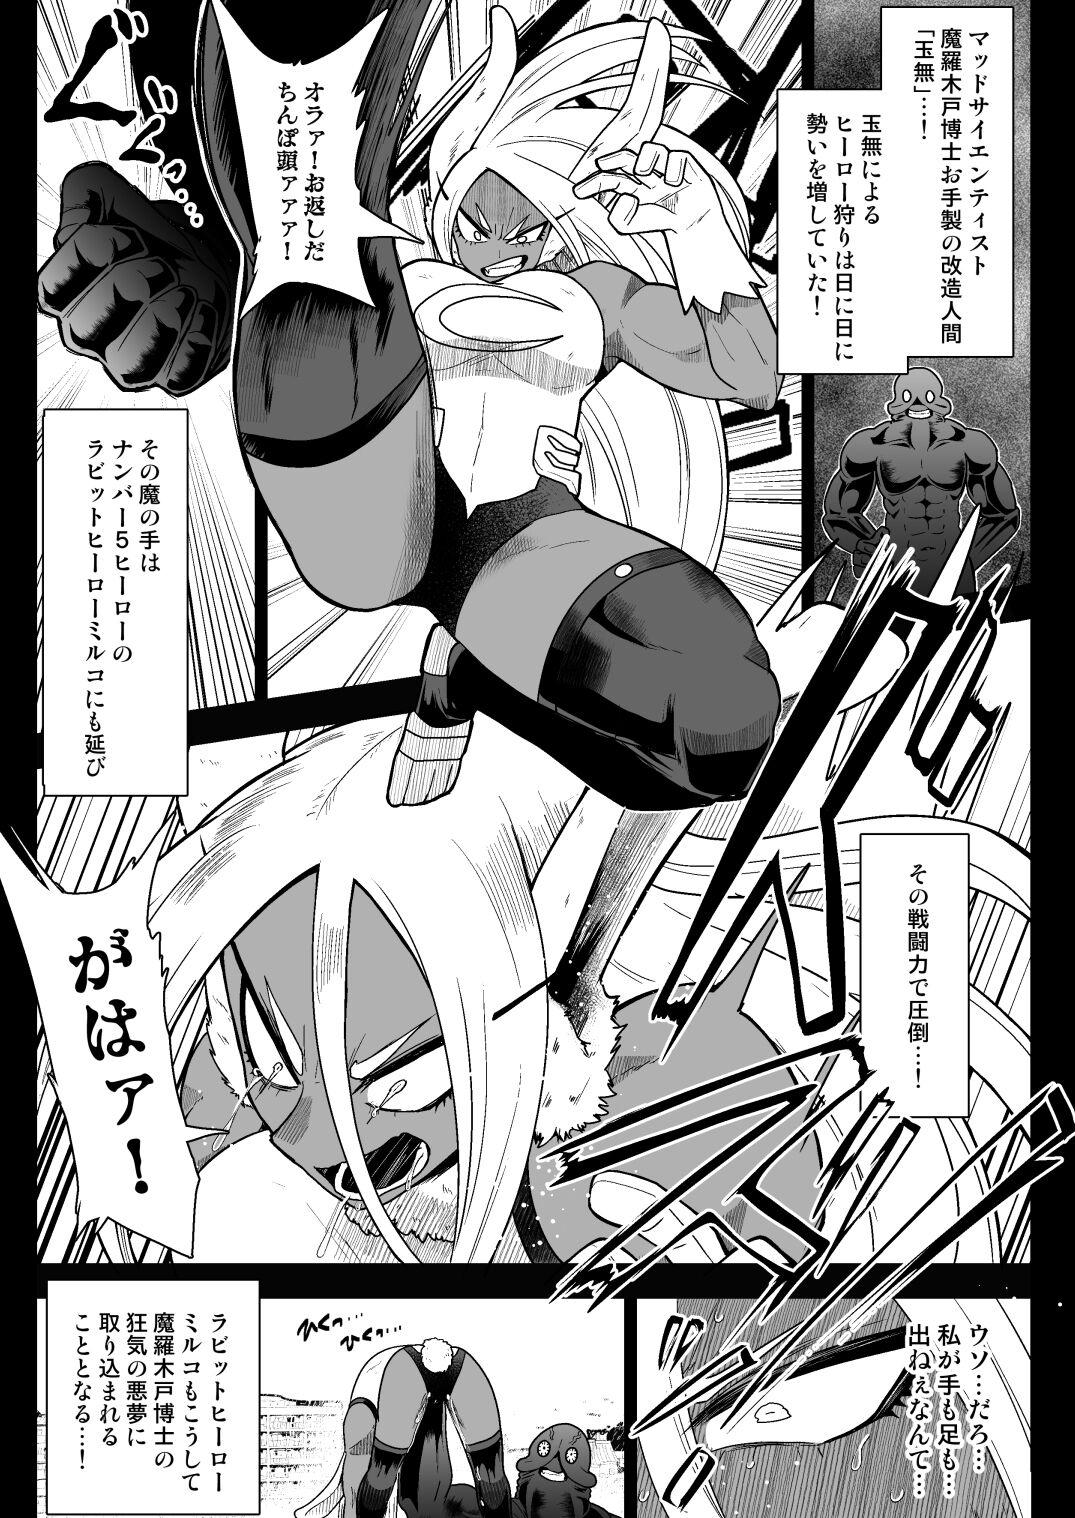 1080p Ra*t Hero Mirko VS Android Tamanashi - My hero academia | boku no hero academia Busty - Page 4